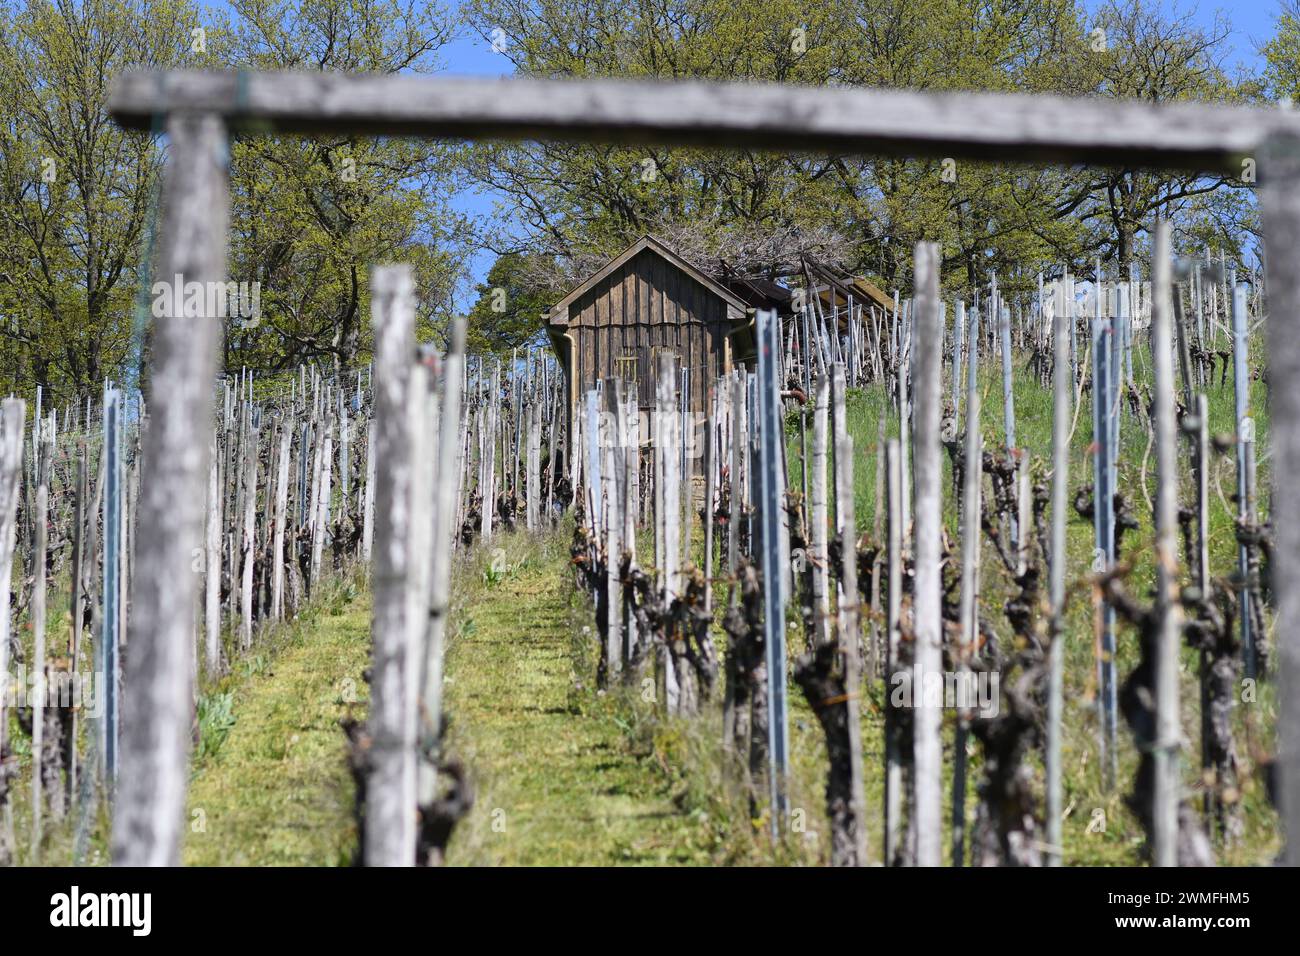 Weinberg an einem Hang im Frühjahr – Blick durch das Eingangstor auf Weinreihen und eine alte Weinberghütte. Stockfoto